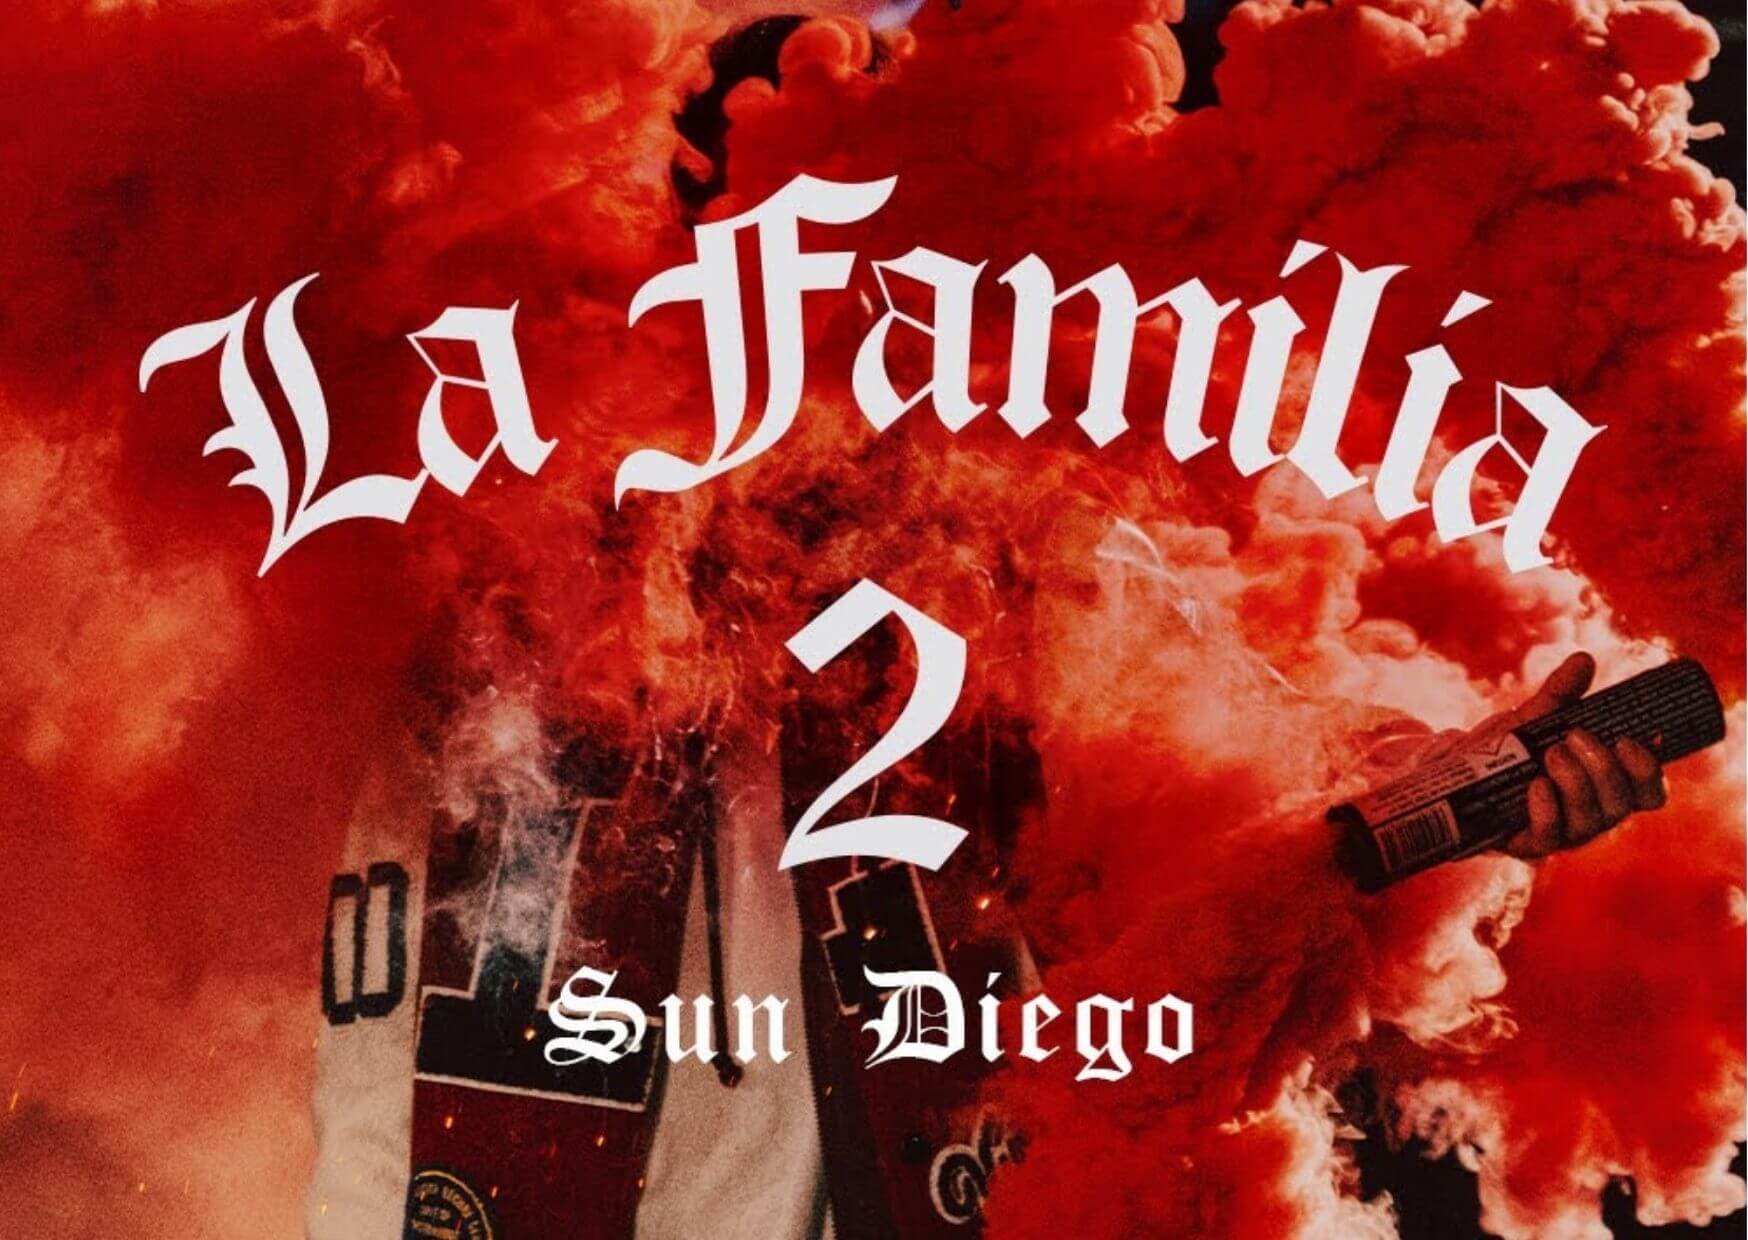 SUN DIEGO: Ein Hoch auf die Wahlfamilie in "La Familia 2"